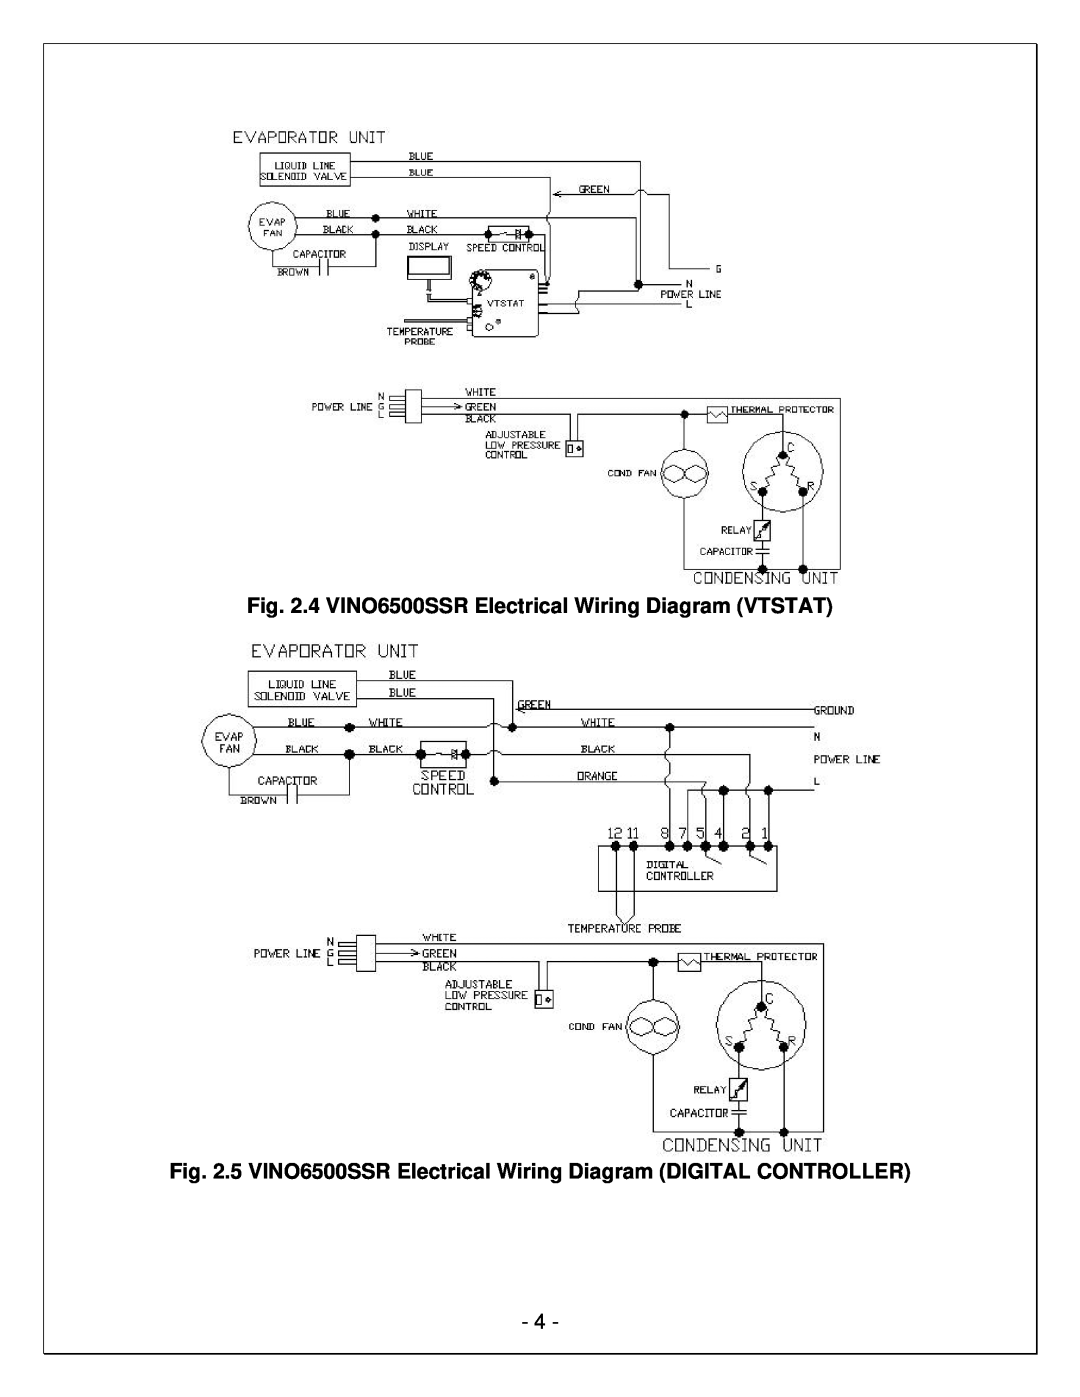 Vinotemp VINO-2500SSR, VINO-6500SSR manual 4 VINO6500SSR Electrical Wiring Diagram VTSTAT 